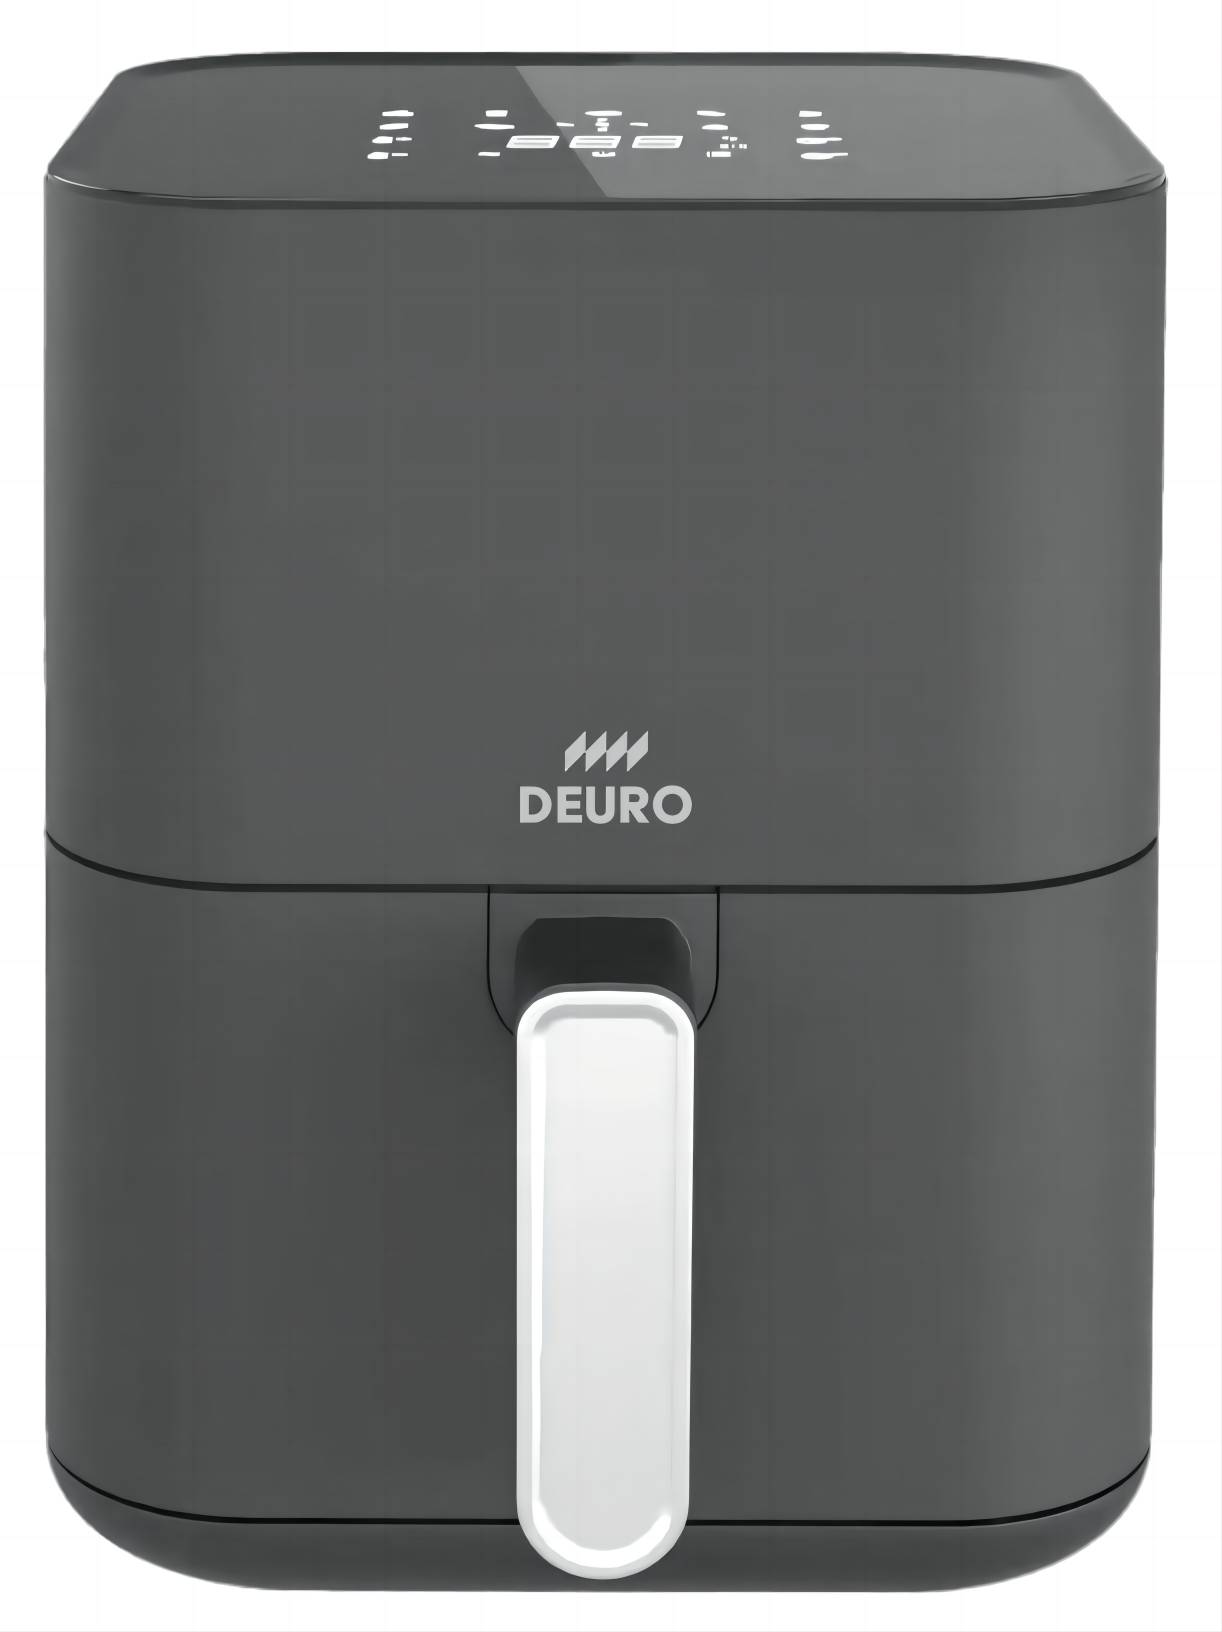 DEURO W001 3L Digital AIR FRYER